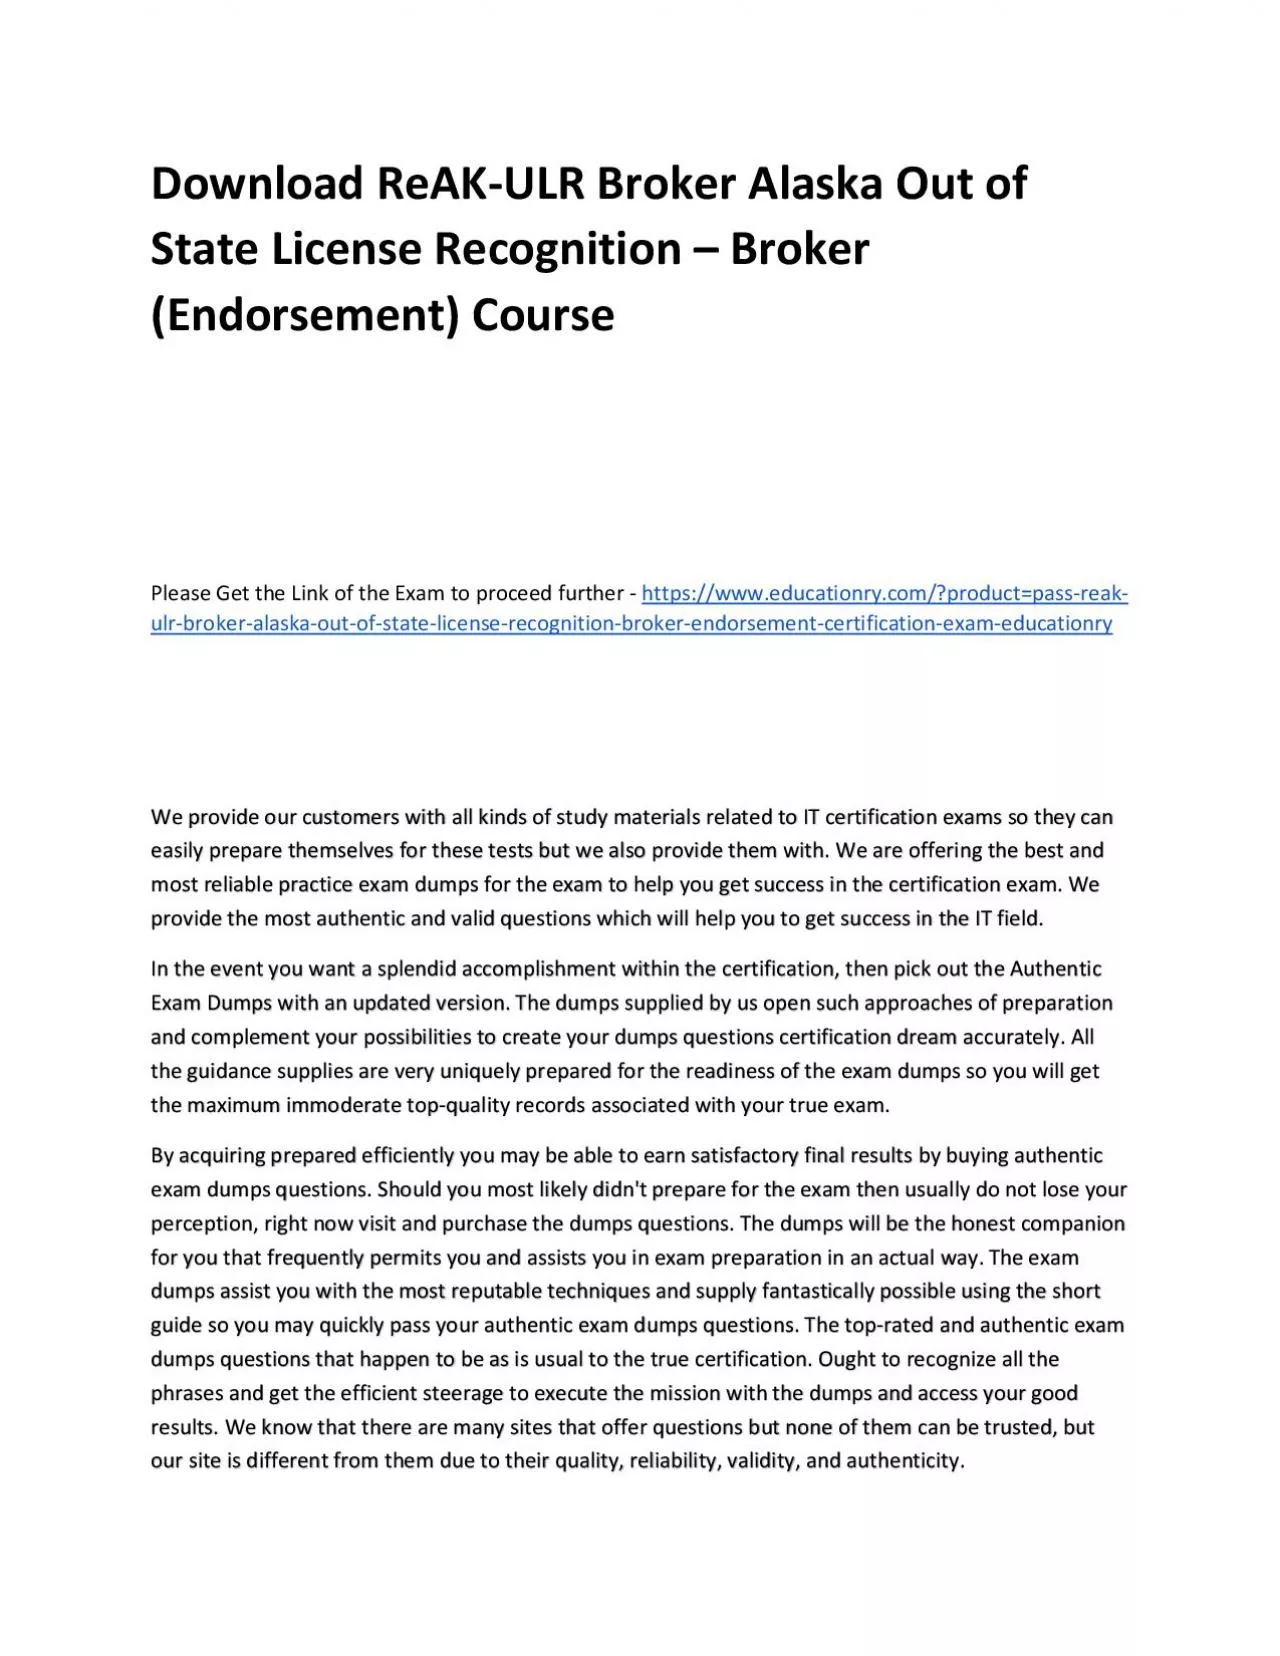 Download ReAK-ULR Broker Alaska Out of State License Recognition – Broker (Endorsement)